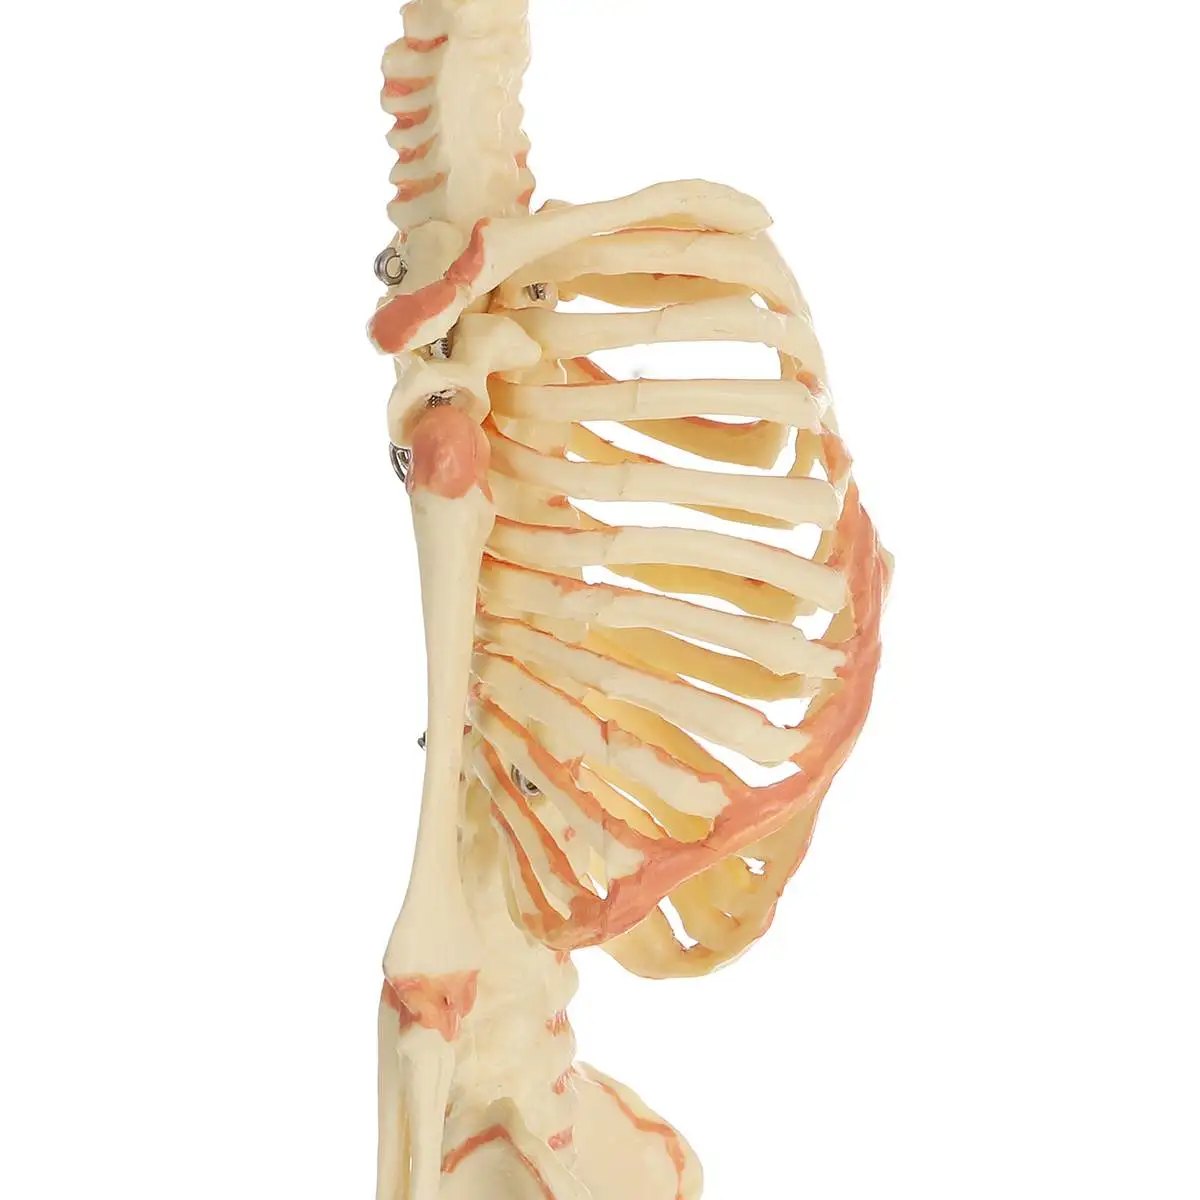 36 см человеческий детский череп для изучения анатомии Скелет анатомический мозг Скелет образец Хэллоуин Опора ужас медицинская модель ПВХ